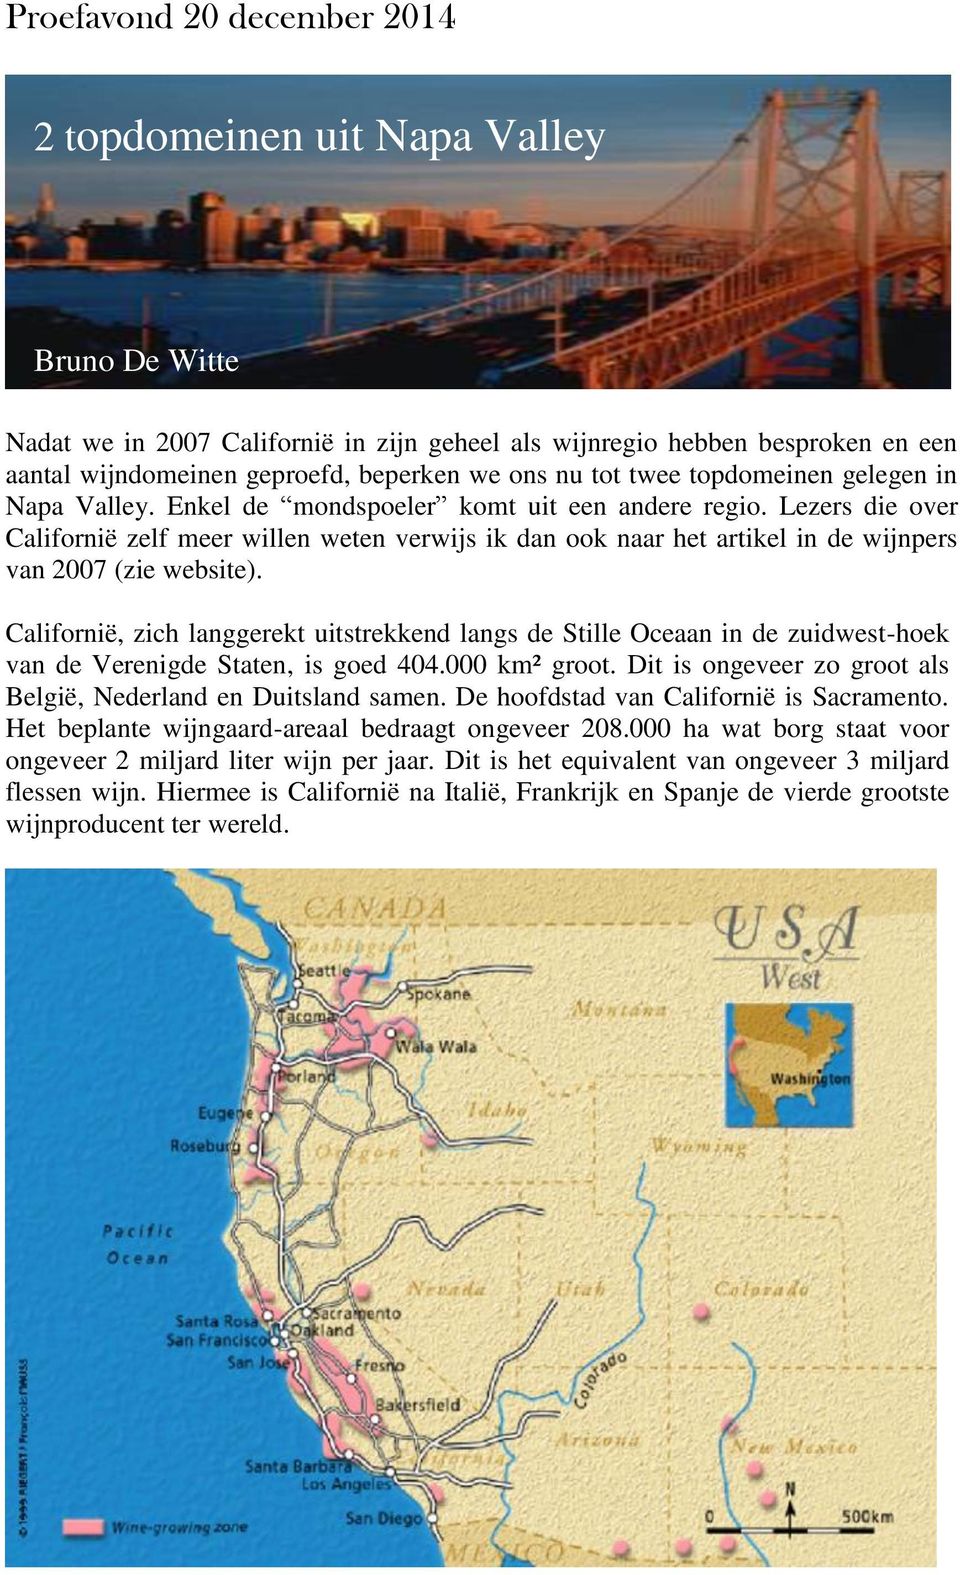 Lezers die over Californië zelf meer willen weten verwijs ik dan ook naar het artikel in de wijnpers van 2007 (zie website).